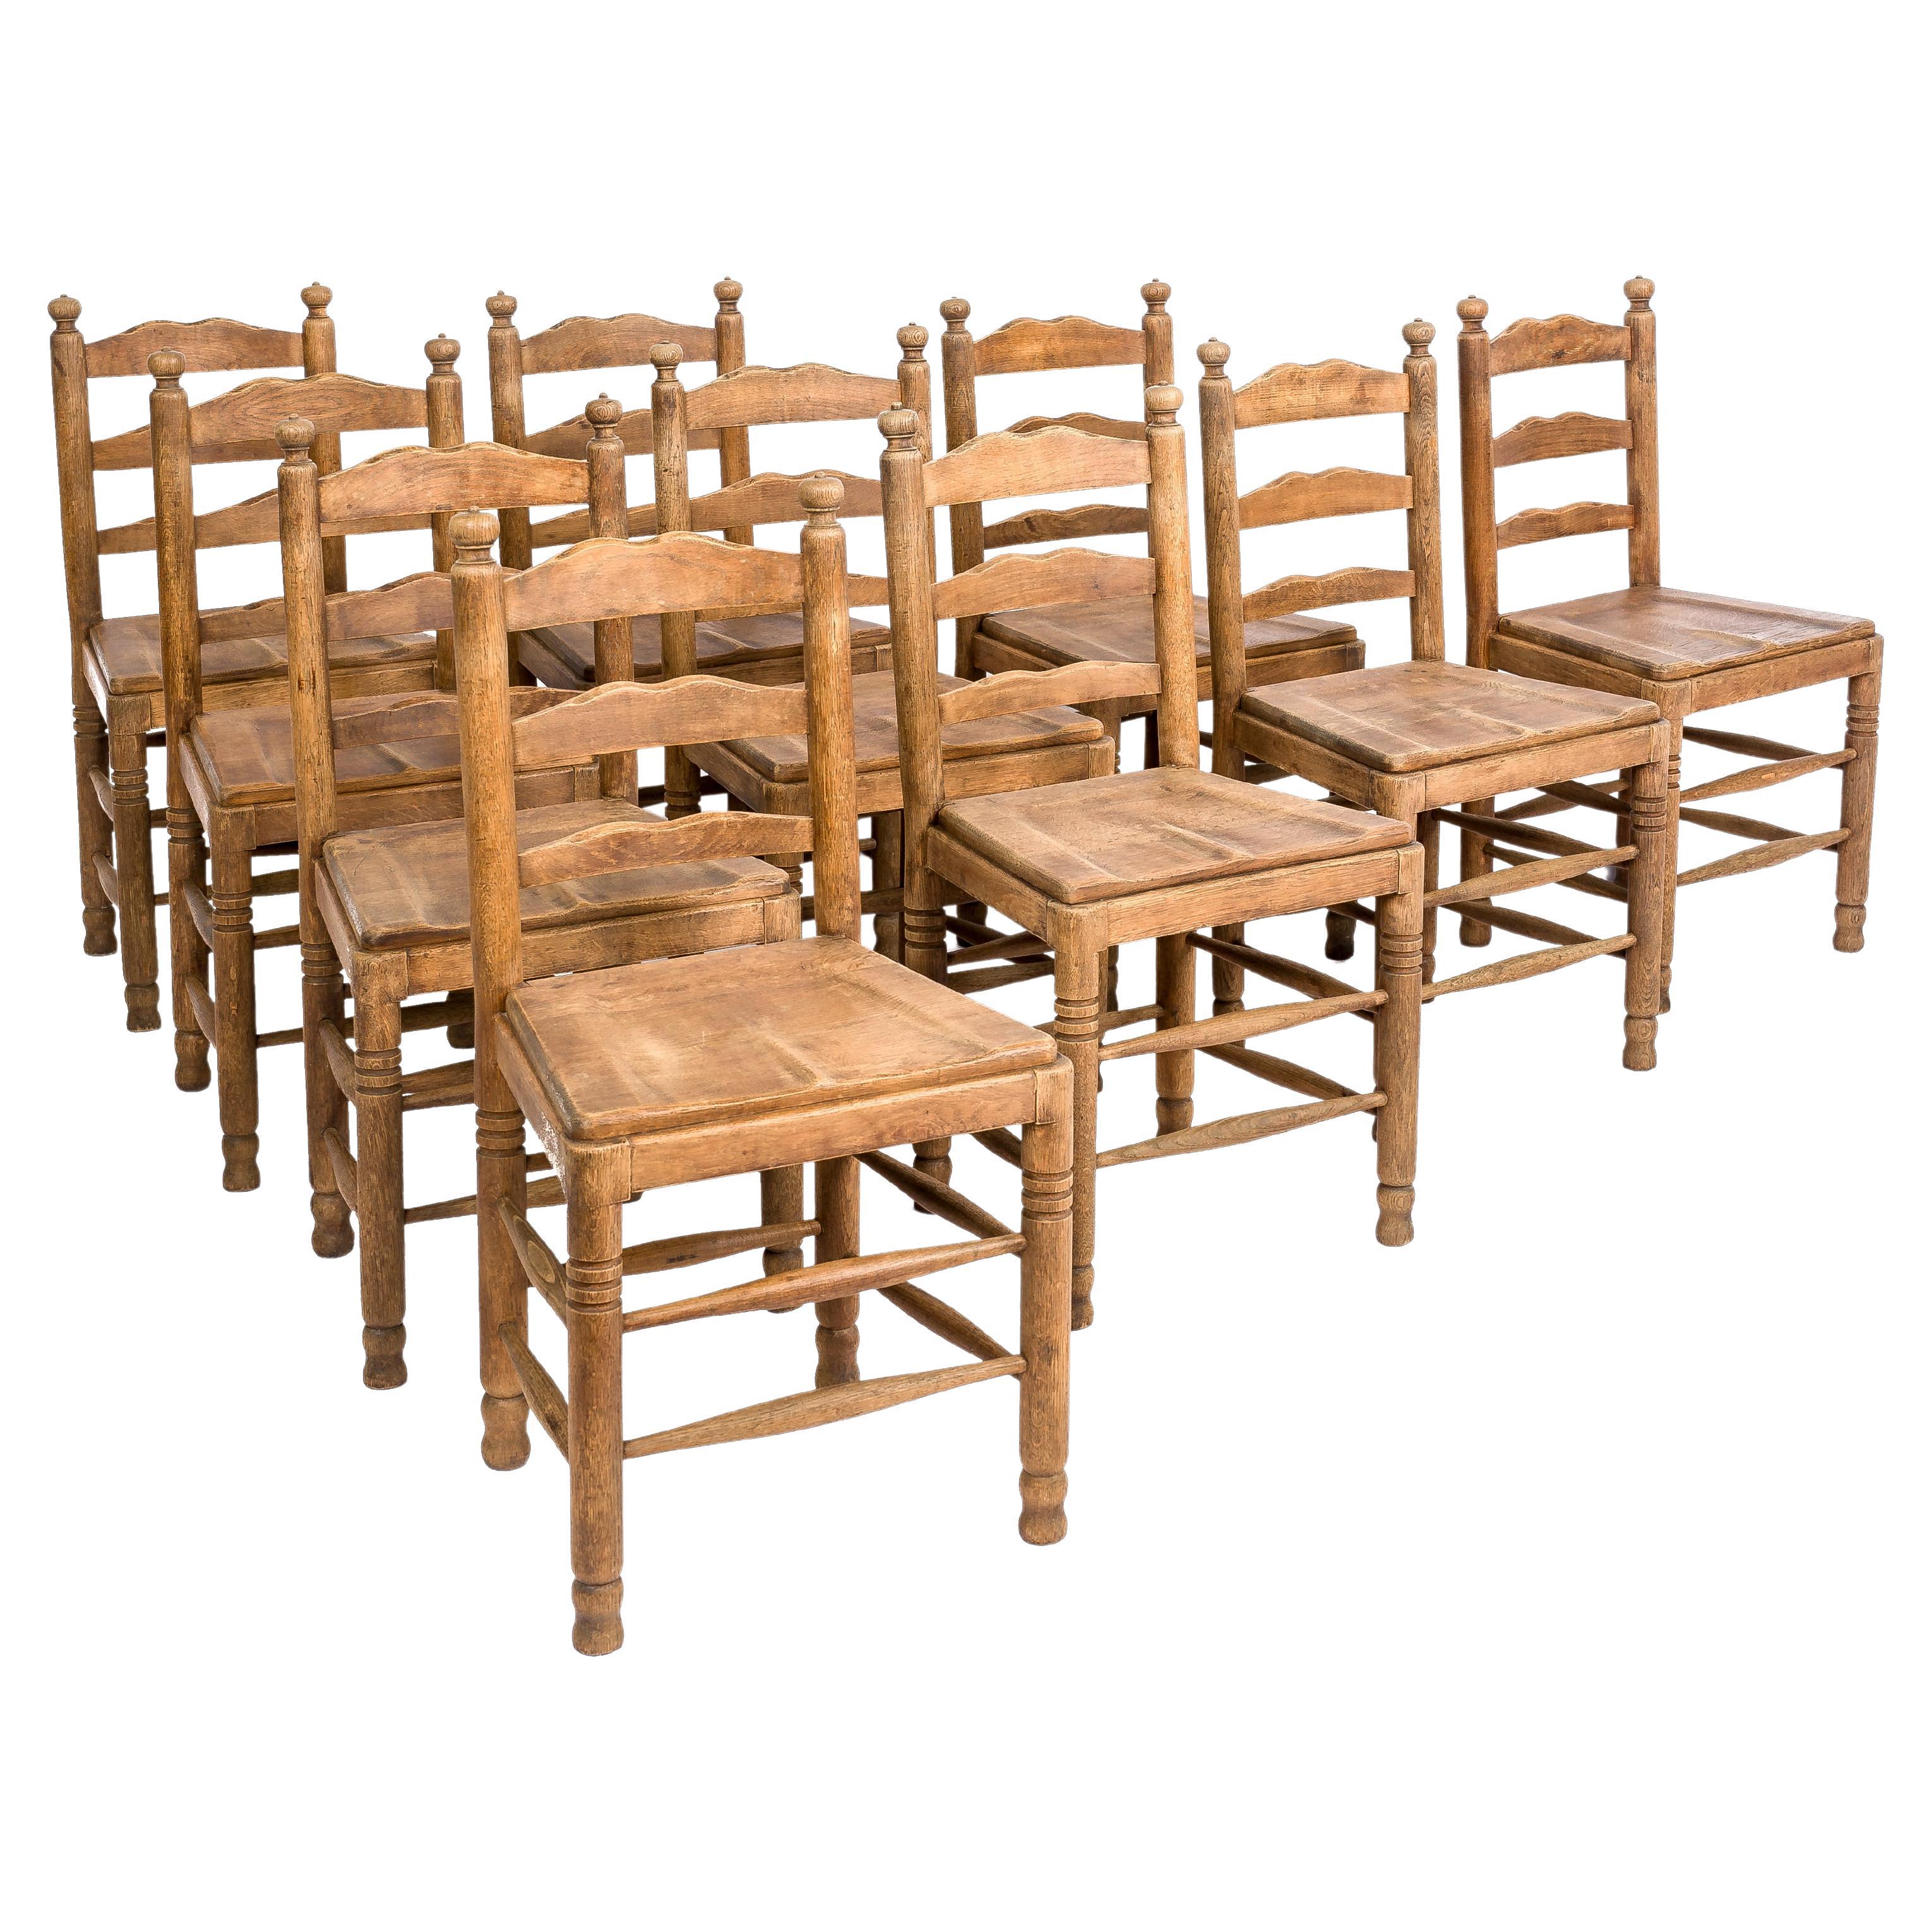 Un magnifique ensemble de 10 chaises de salle à manger provenant d'un monastère du nord de la France. 
Les chaises ont été fabriquées à la fin des années 1800 dans un chêne d'été européen de la plus haute qualité. L'ensemble présenté ici comporte